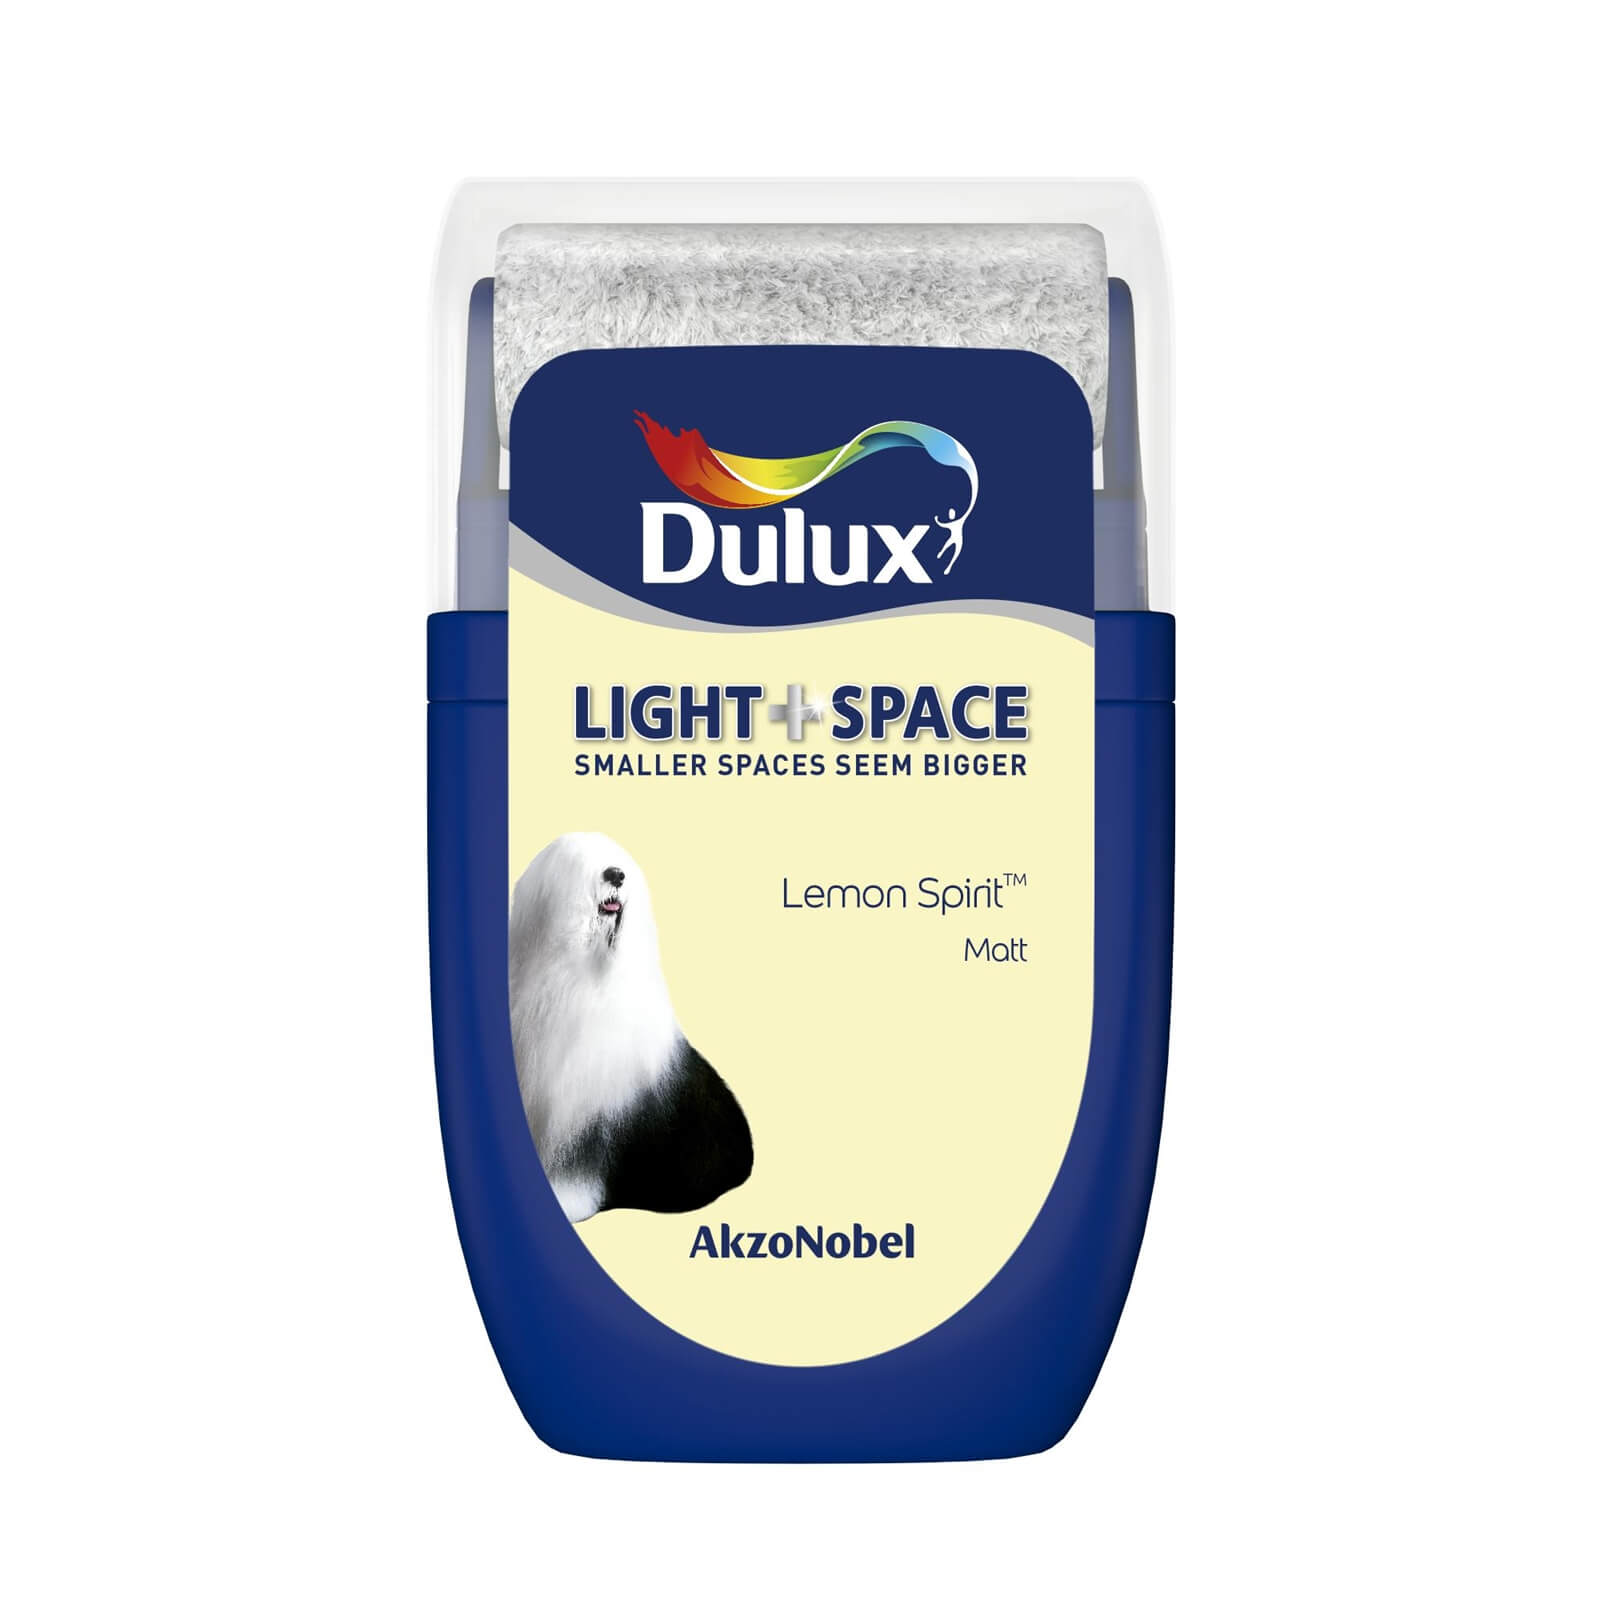 Dulux Light & Space Matt Emulsion Paint Lemon Spirit - Tester 30ml